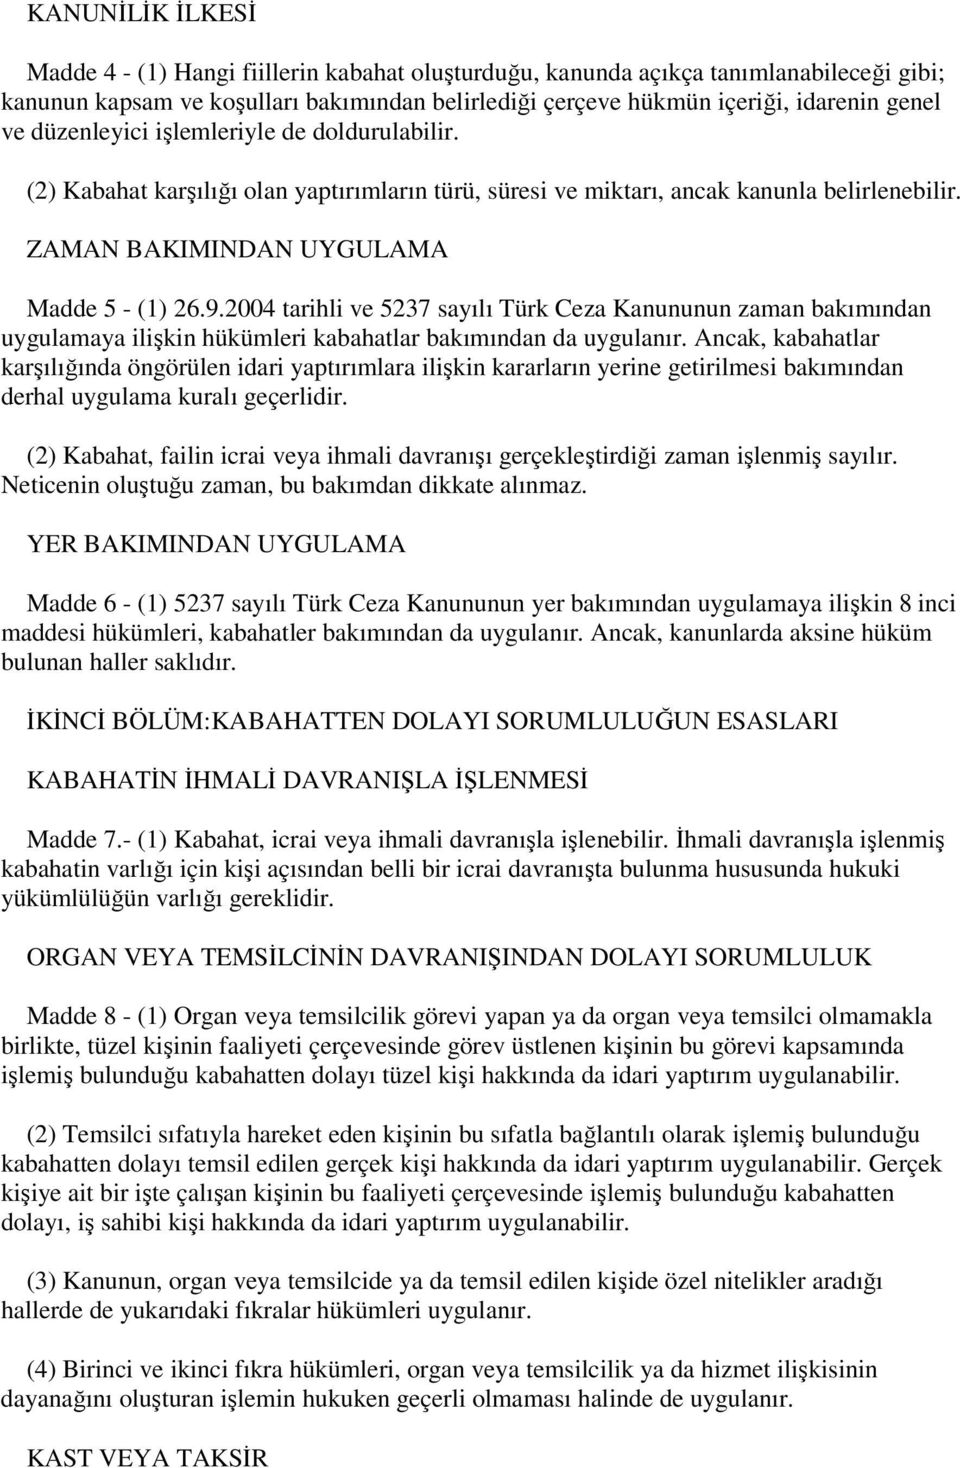 2004 tarihli ve 5237 sayılı Türk Ceza Kanununun zaman bakımından uygulamaya ilişkin hükümleri kabahatlar bakımından da uygulanır.